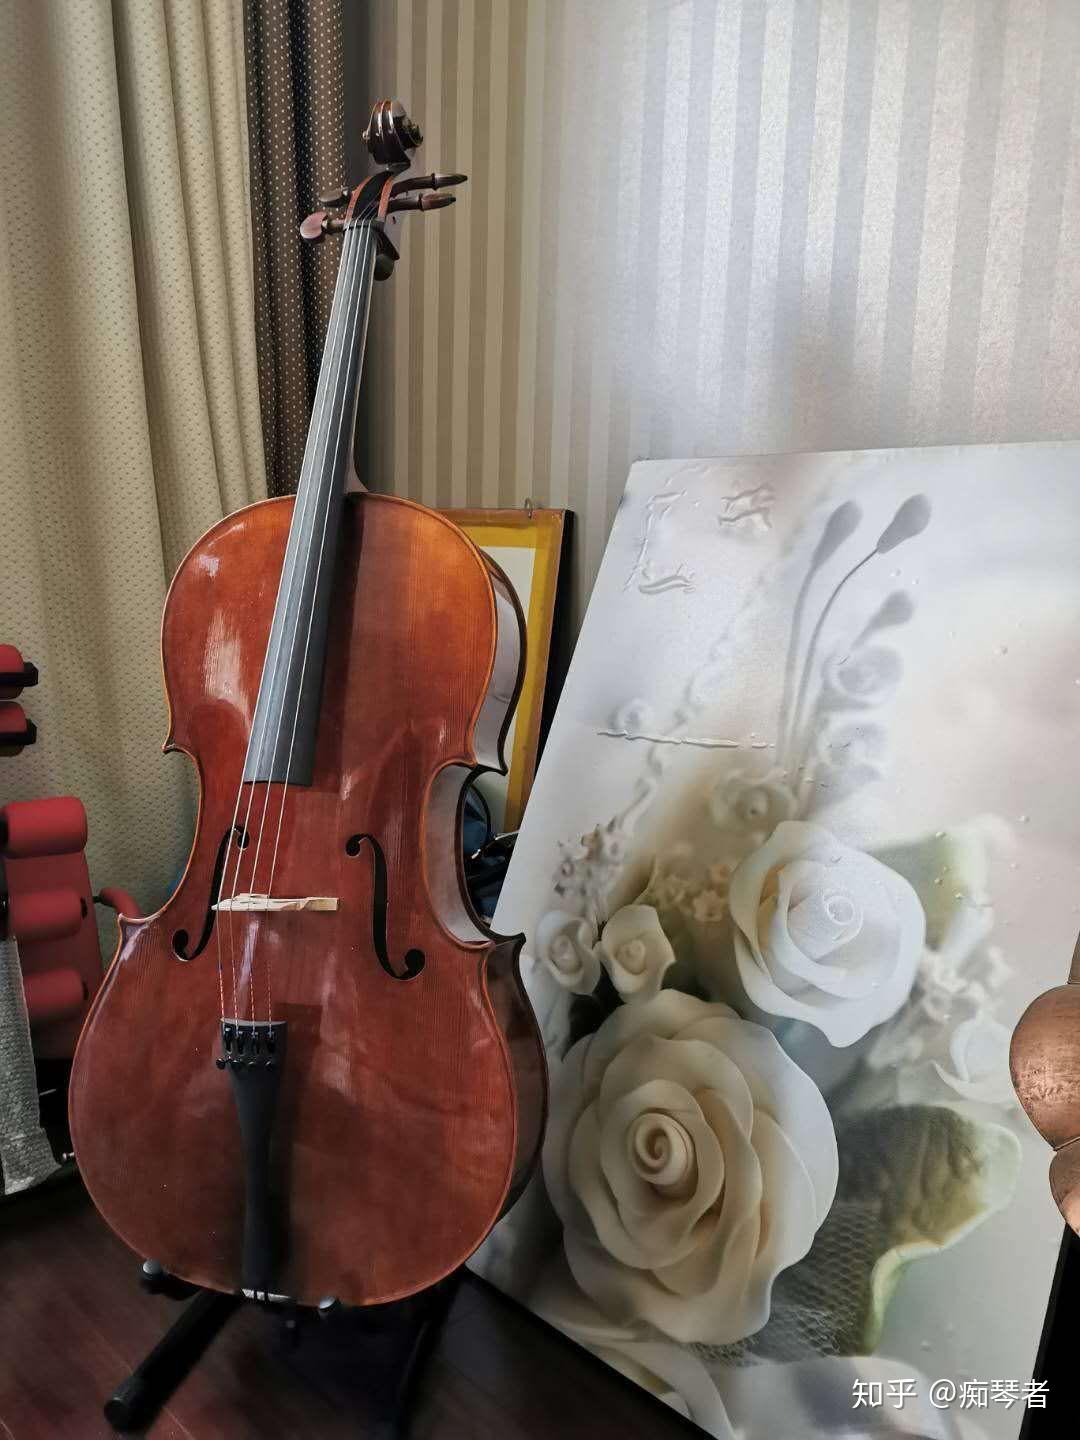 Two Violins, Viola and Cello | LienViolins